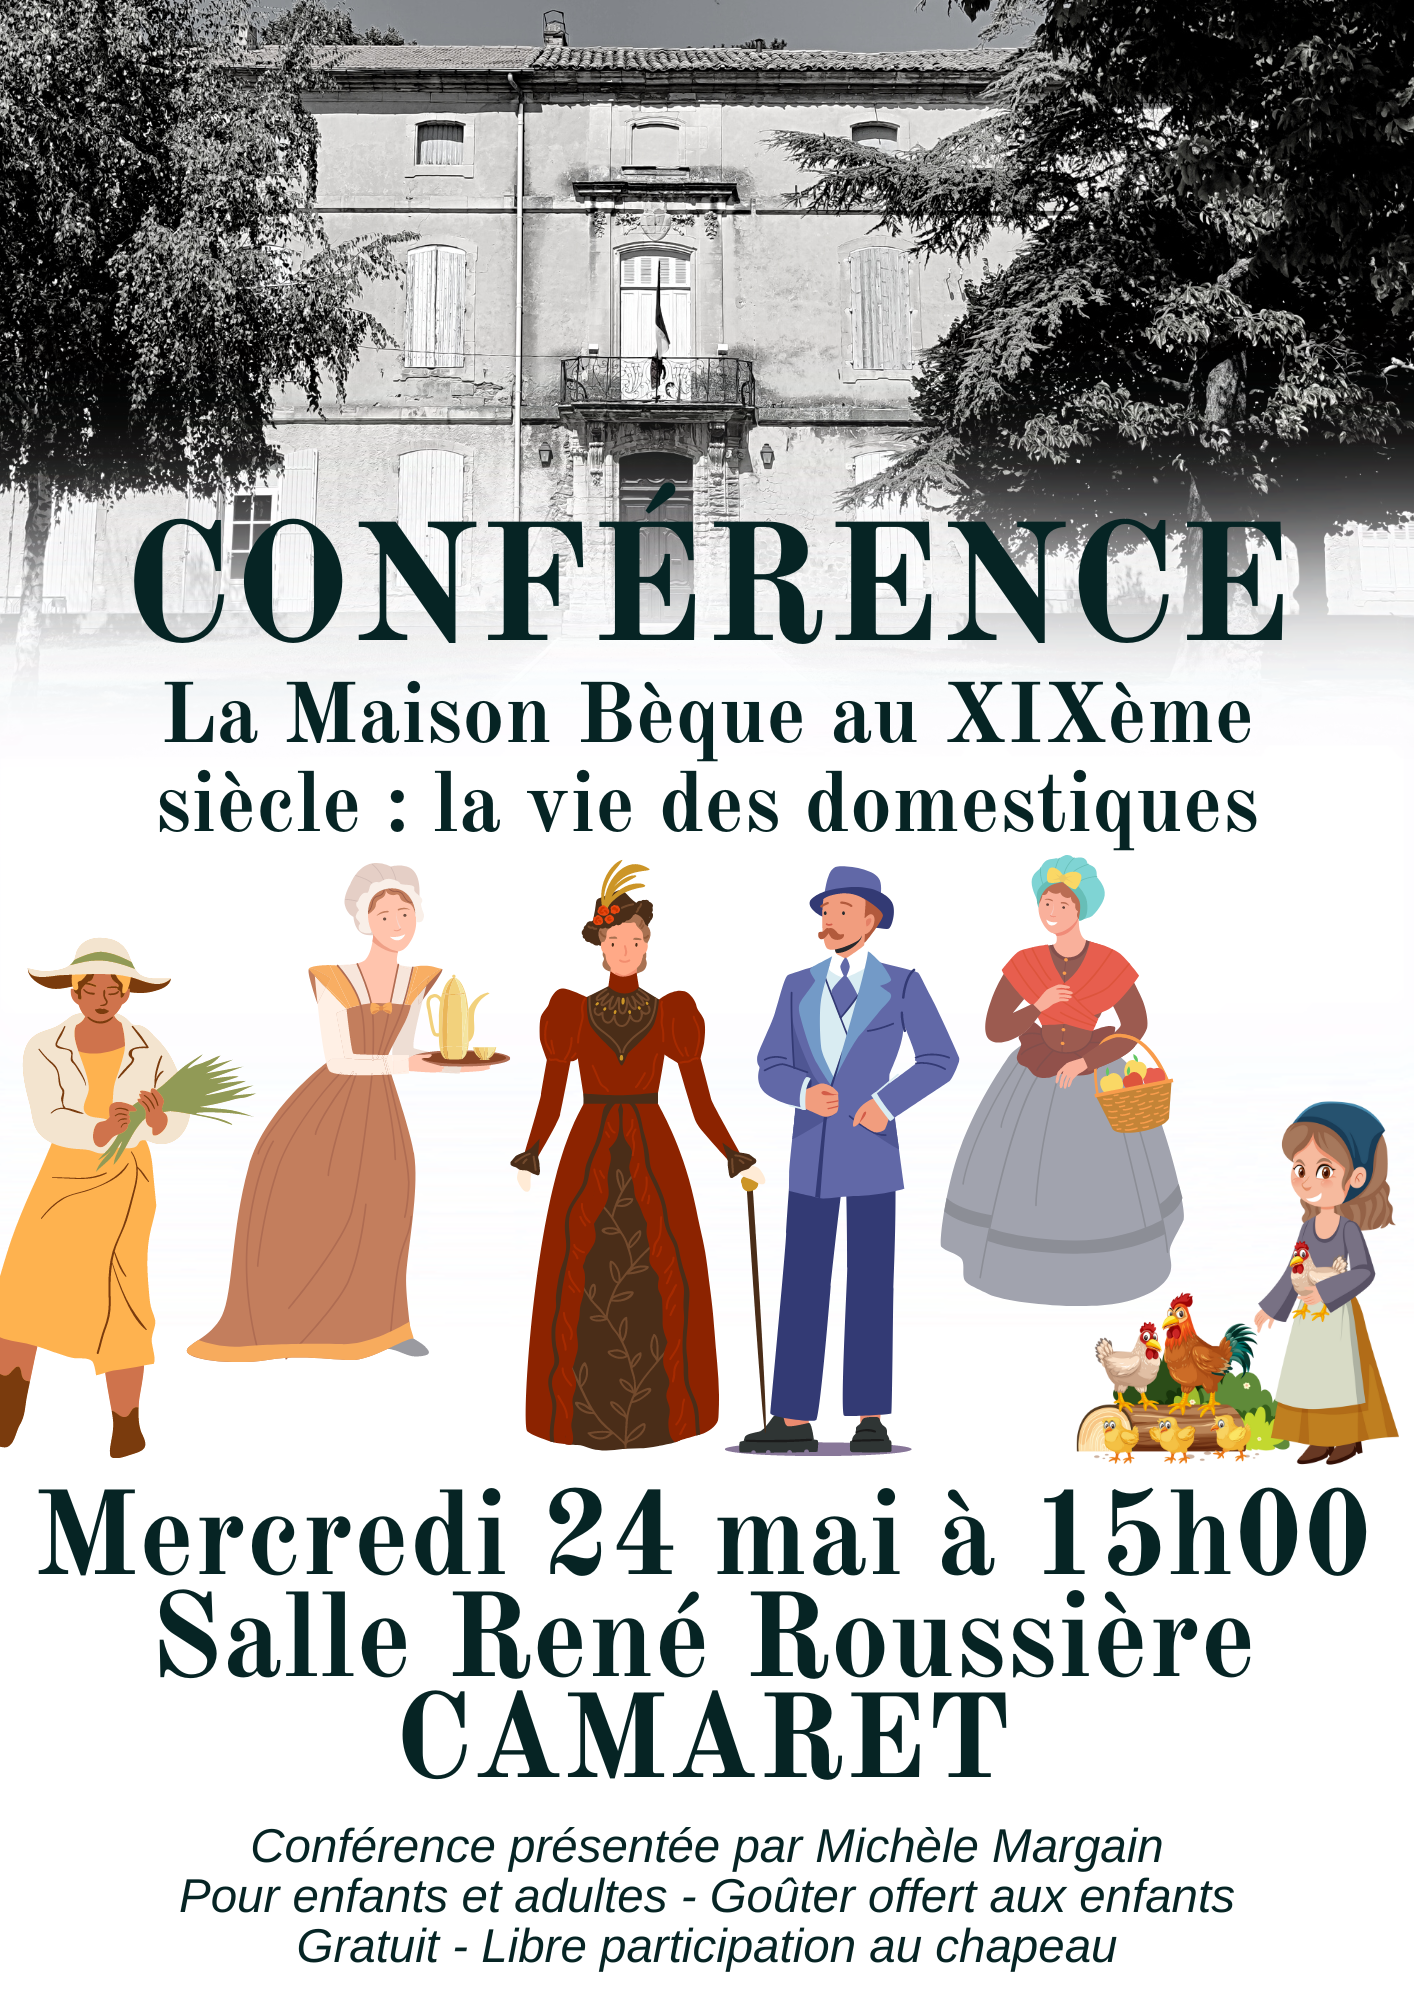 Conférence sur la vie des domestiques autour de la Maison Bèque au XIXème siècle le mercredi 24 mai à 15h00 à la salle René Roussière